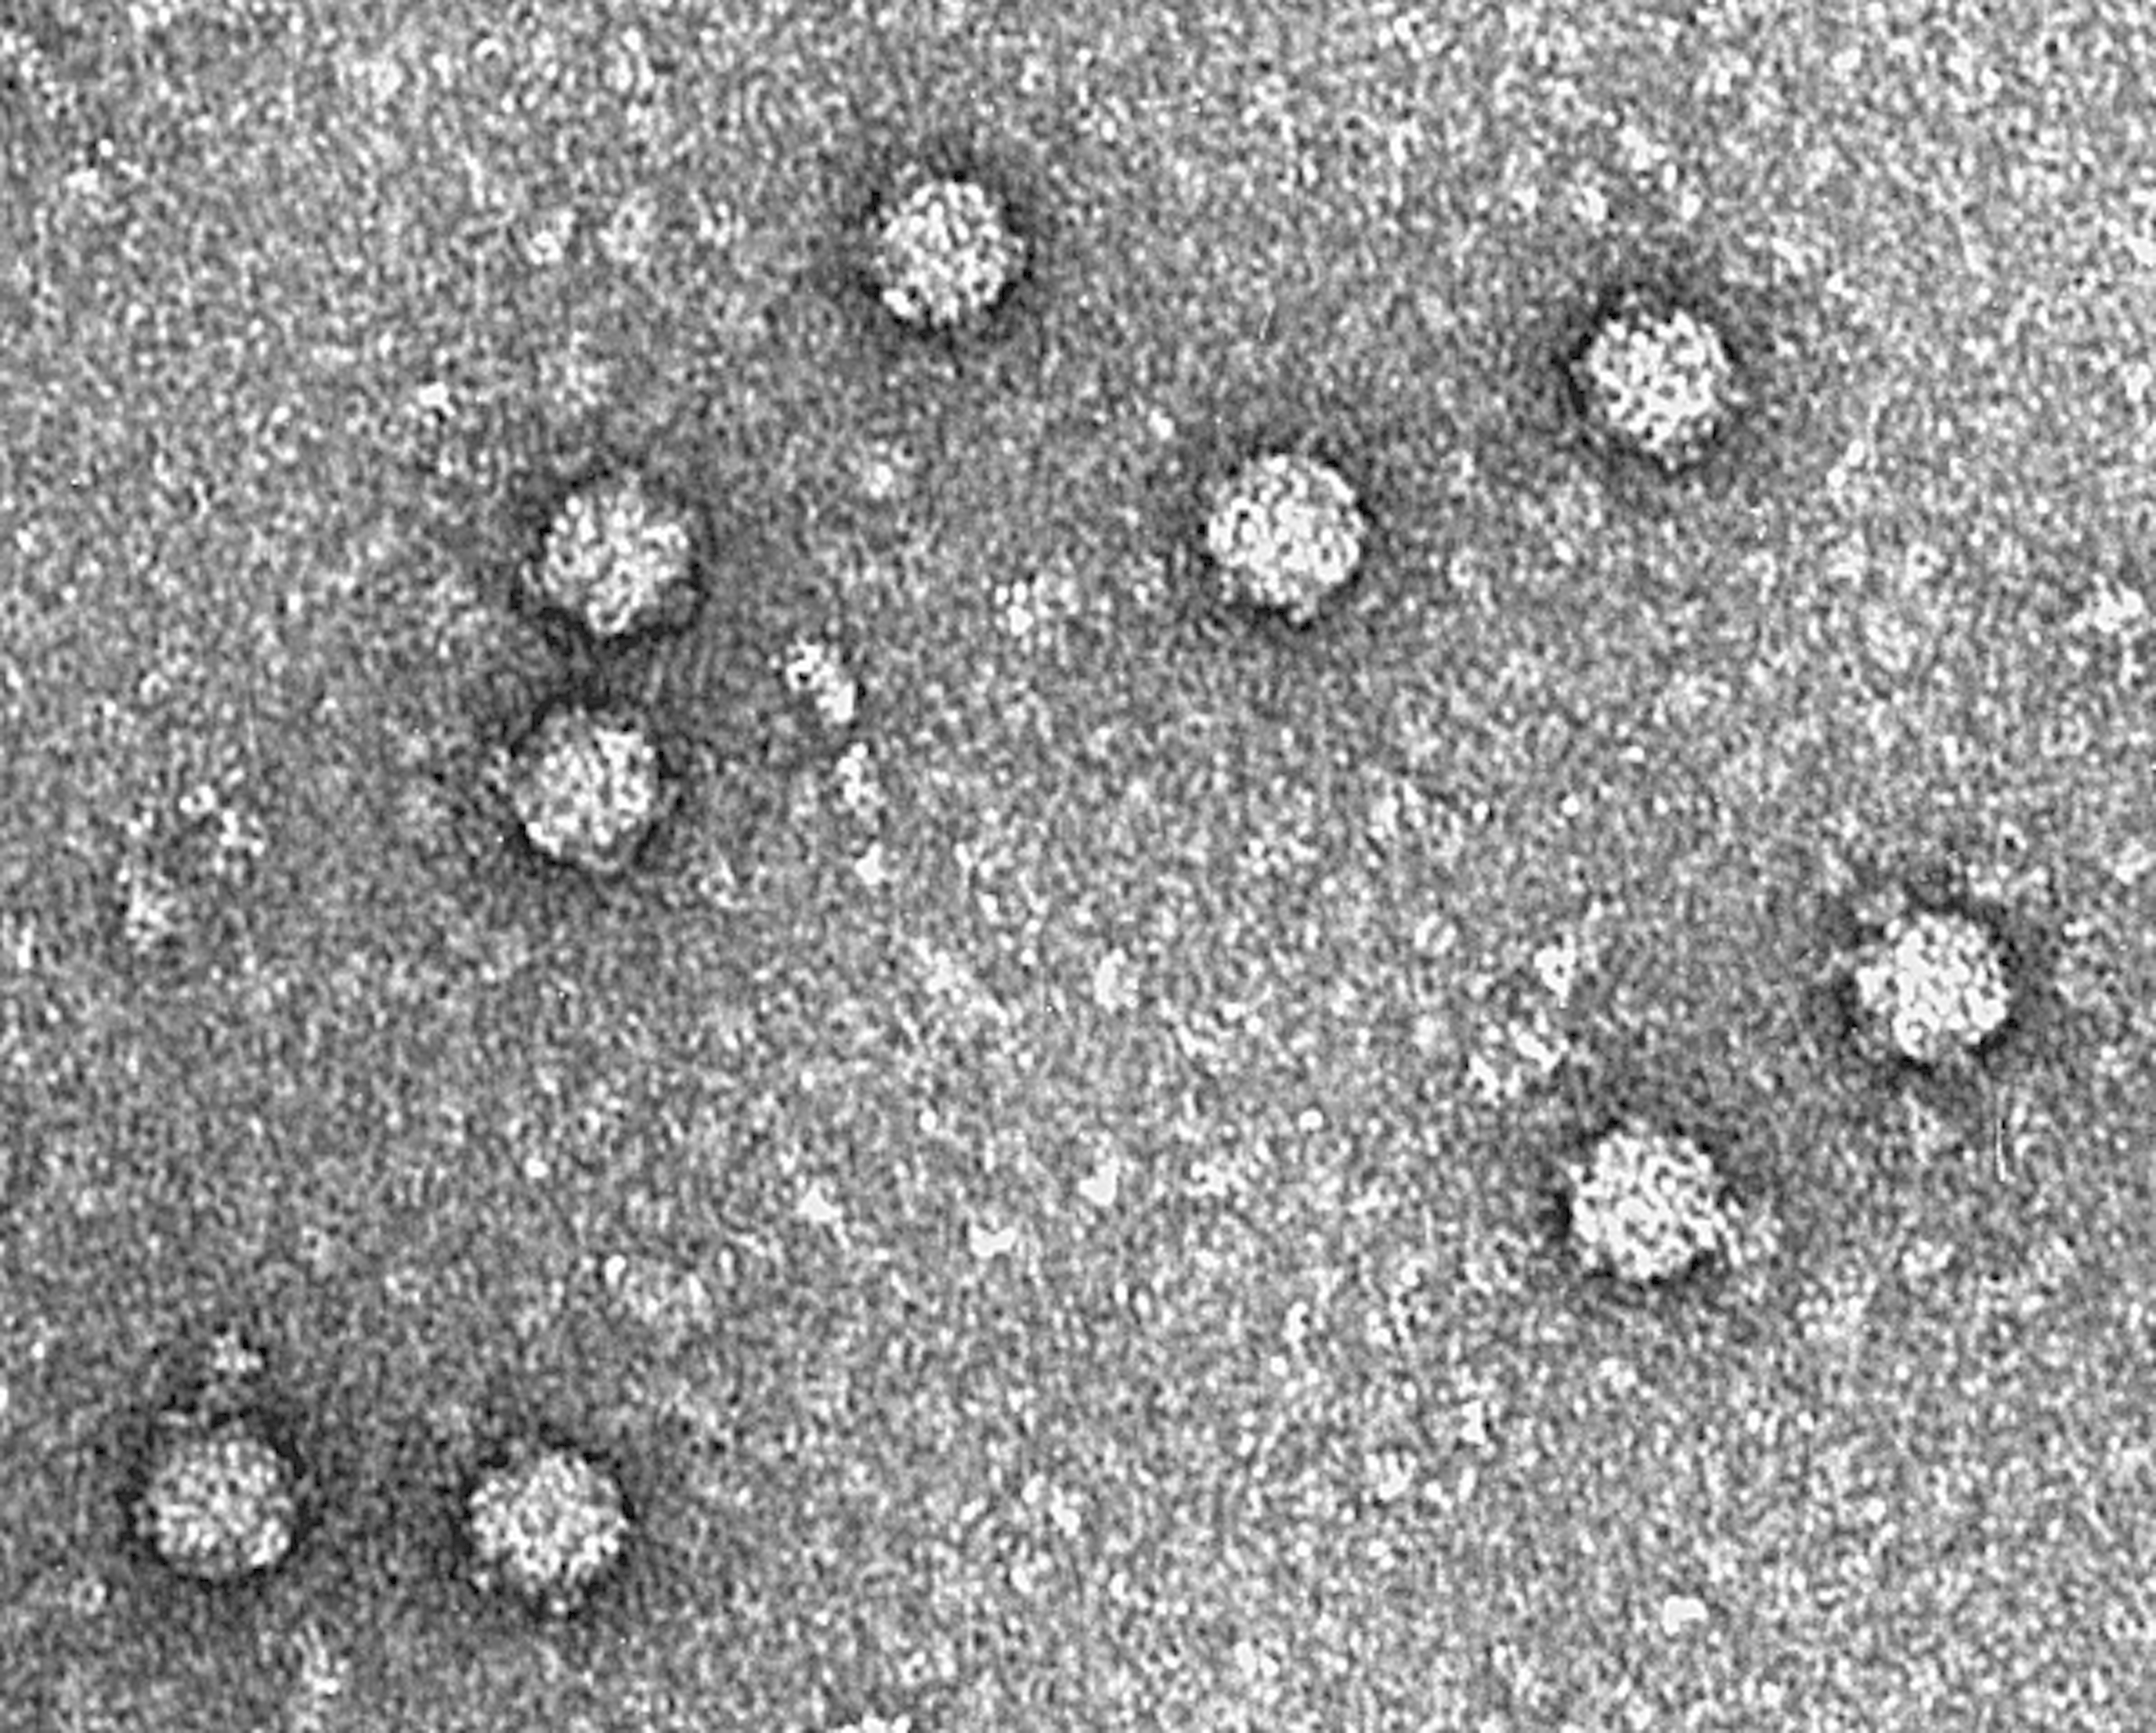 Mengenal bakteriofag: virus baik yang melawan infeksi bakteri mirip antibiotik